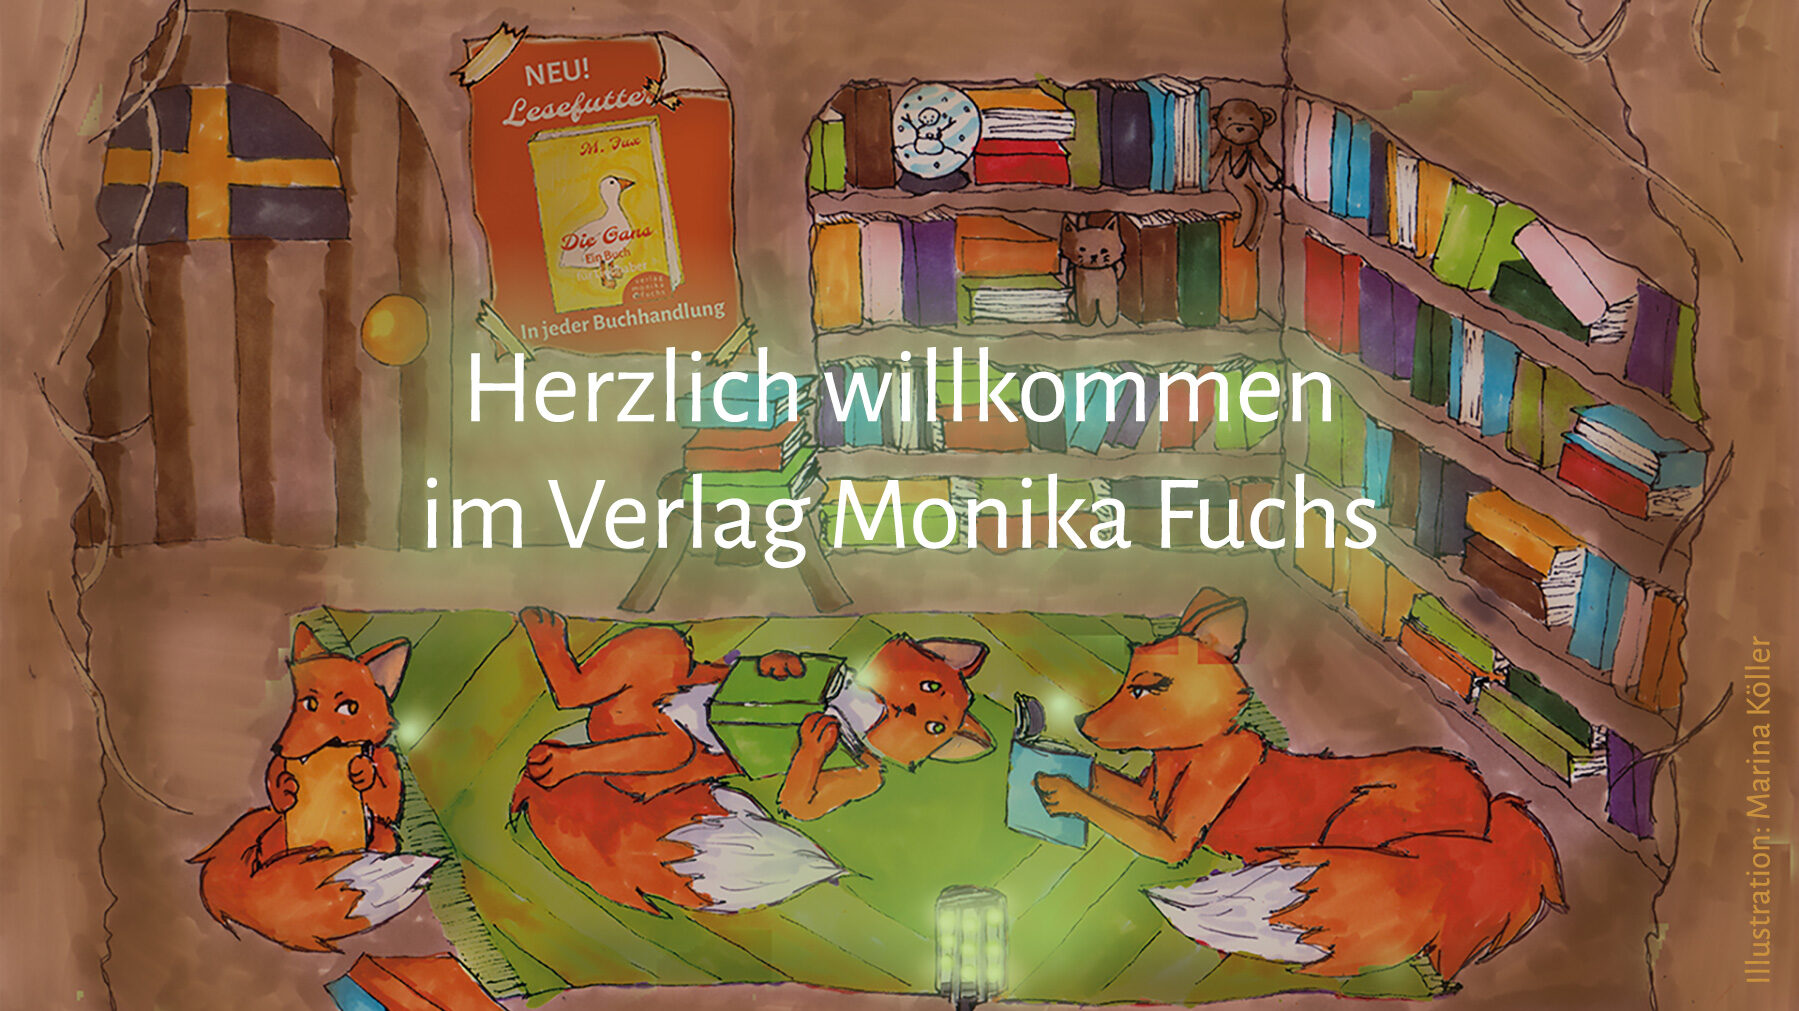 Herzlich willkommen im Verlag Monika Fuchs!